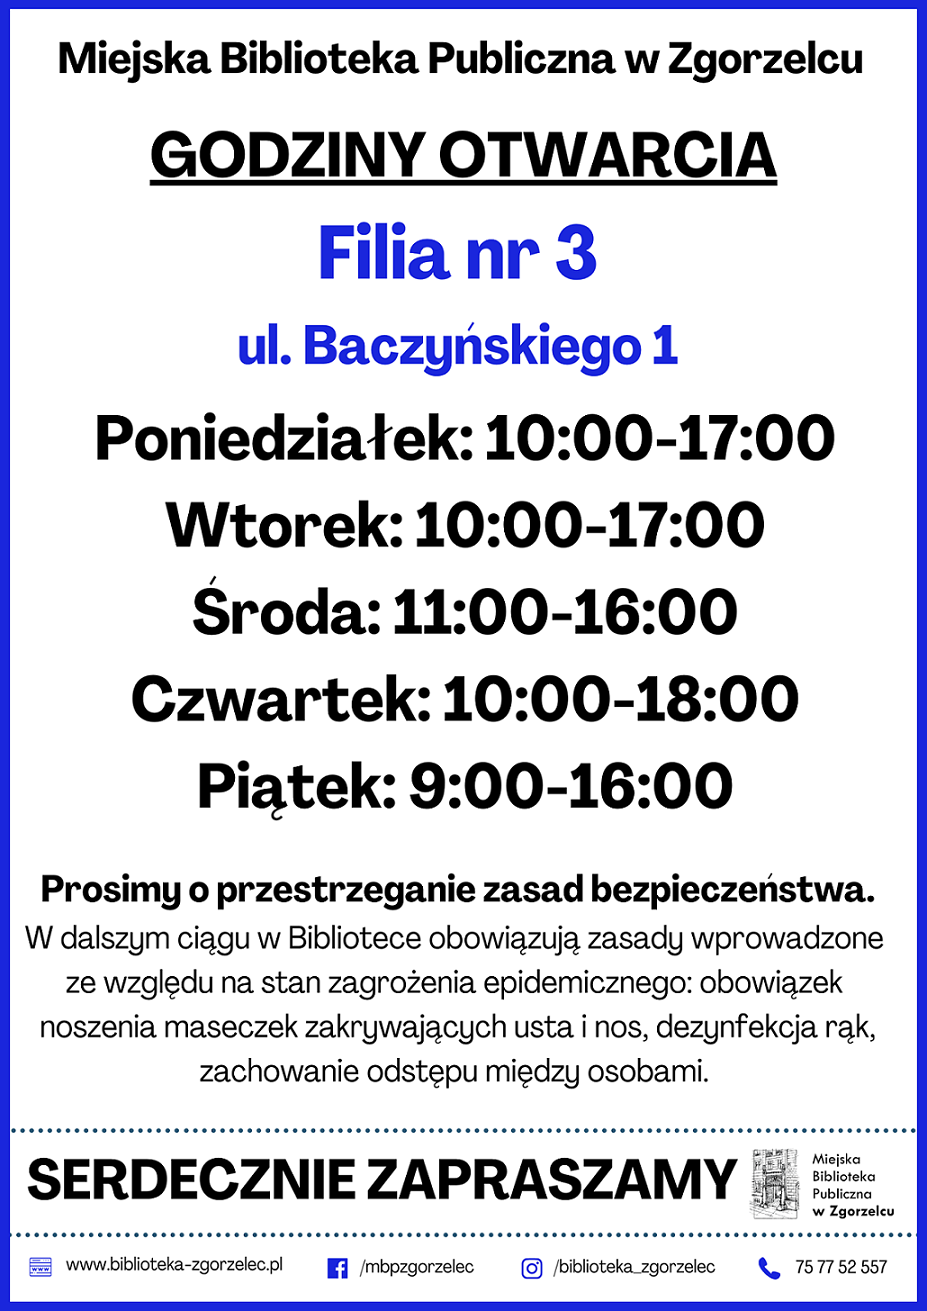 Filia nr 3 przy ul. Baczyńskiego 1 ponownie otwarta od 1 lutego